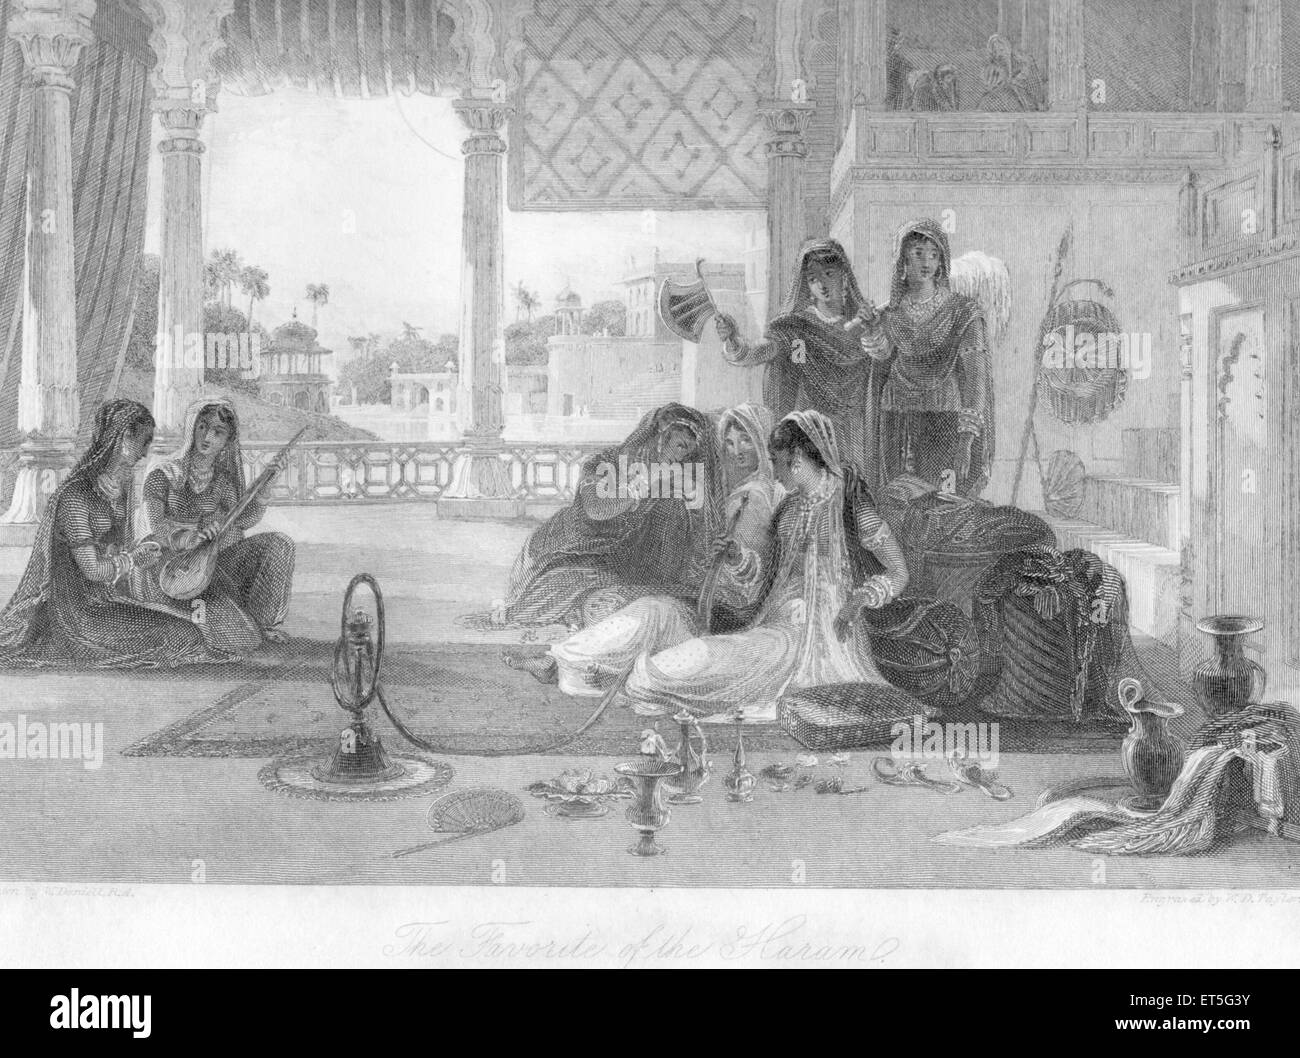 Royal Harem, Rani, Maharani, women smoking hookah, playing musical instruments, fanning, India, Asia, Asian, Indian, old vintage 1800s steel engraving Stock Photo